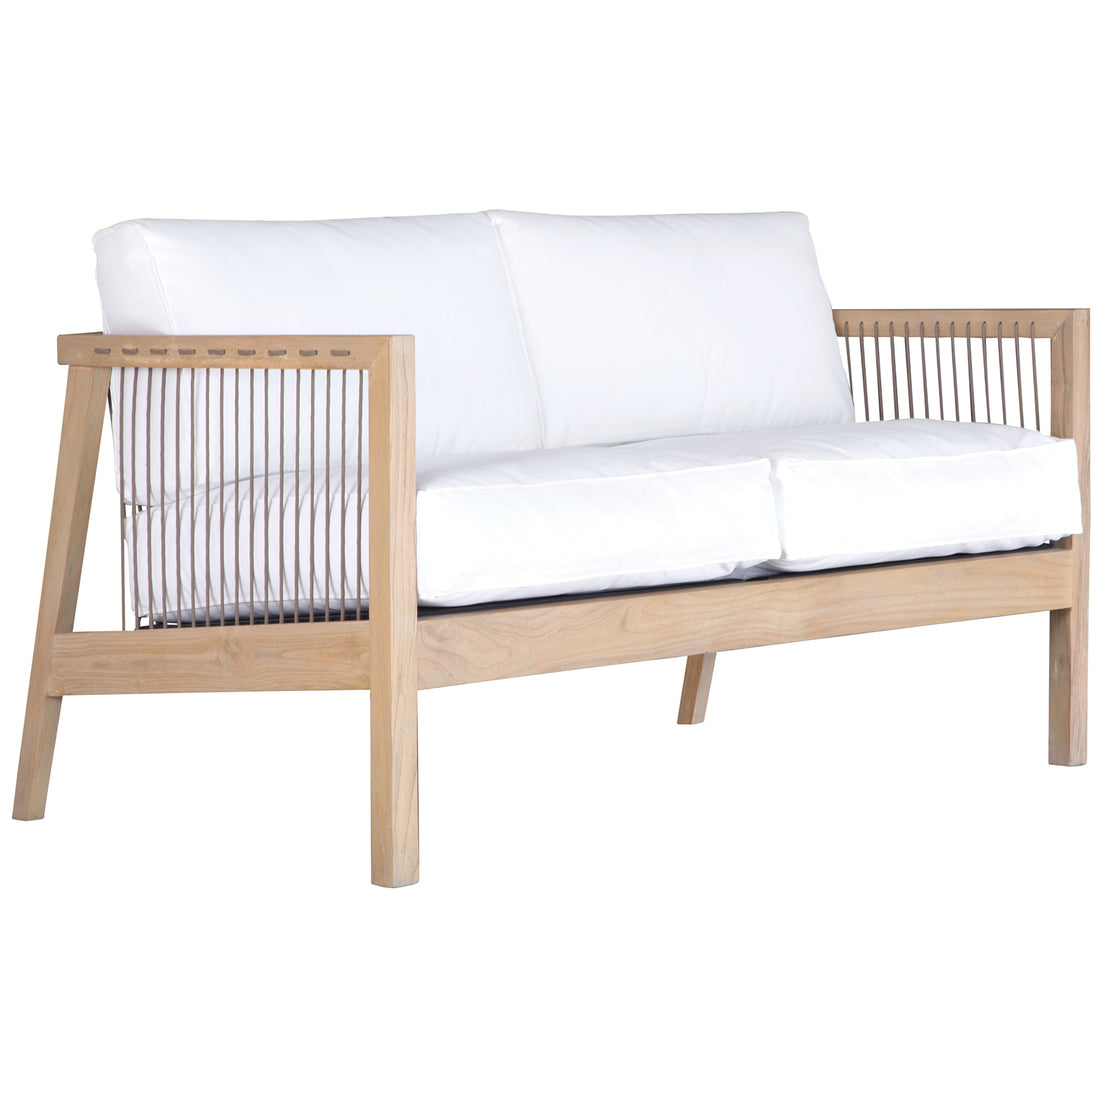 Brindi Sofa | Two Seater | White - Uniqwa Collections wholesale furniture suppliers for interior designers australia